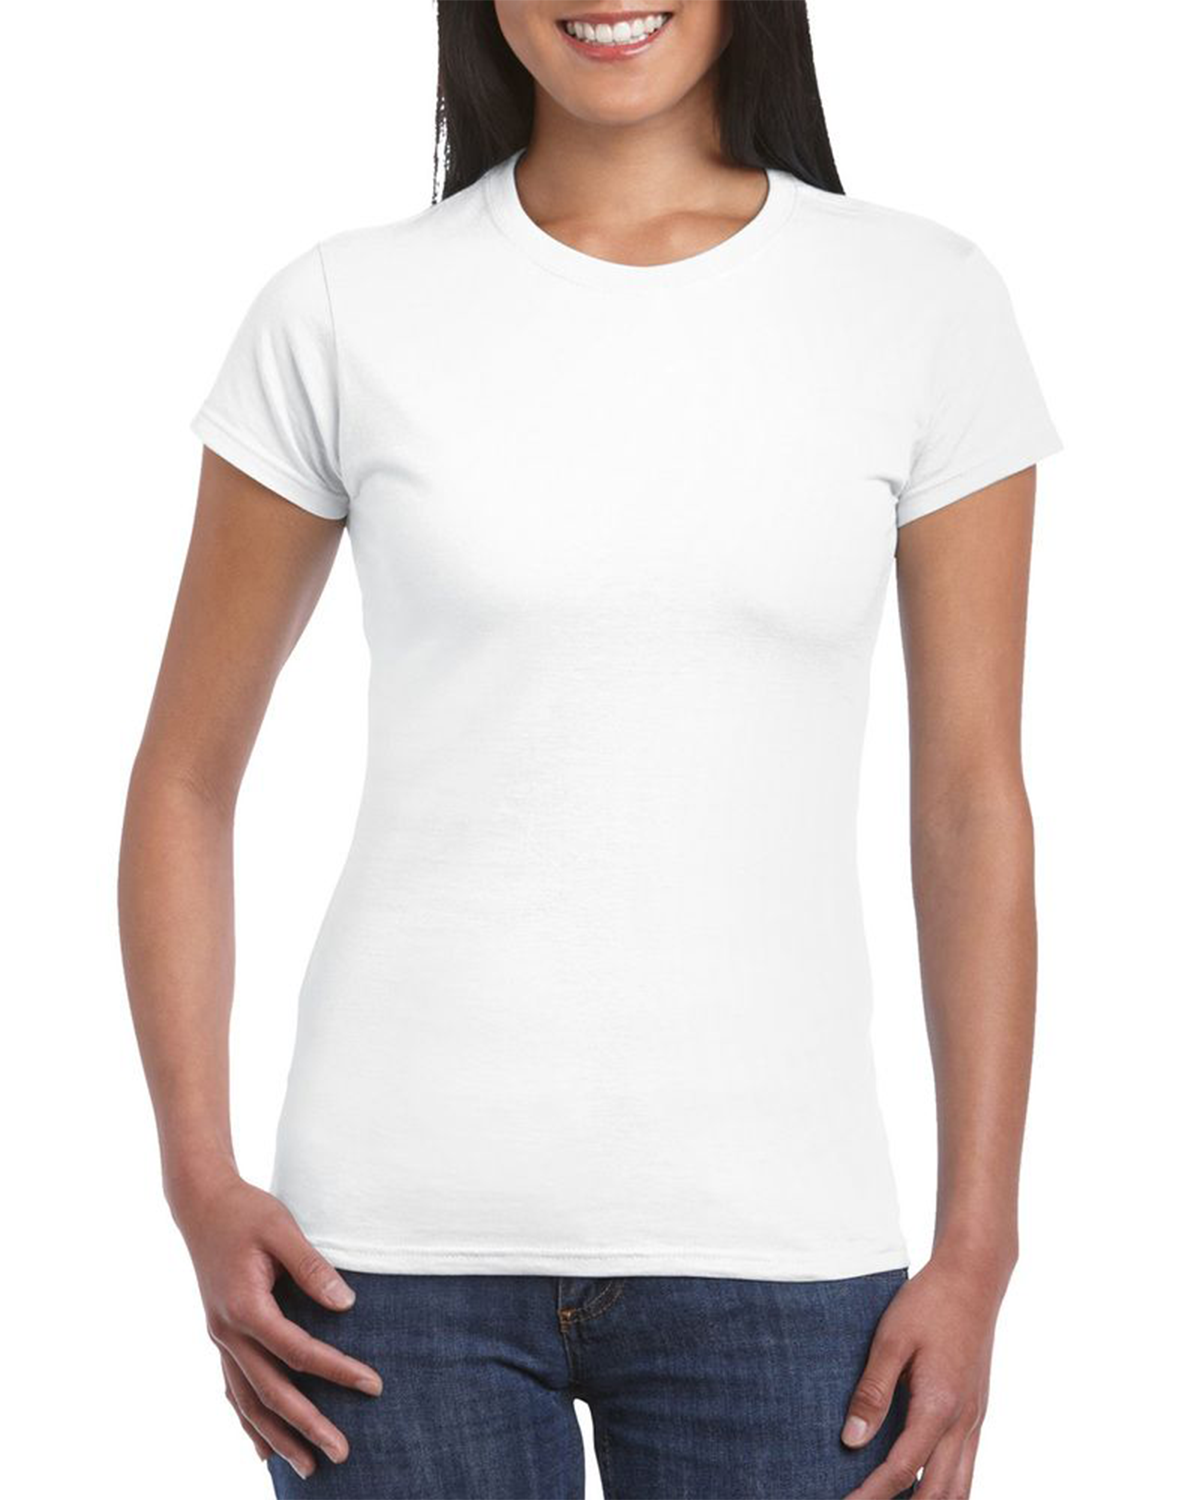 T-shirt Personnalisé - Femme